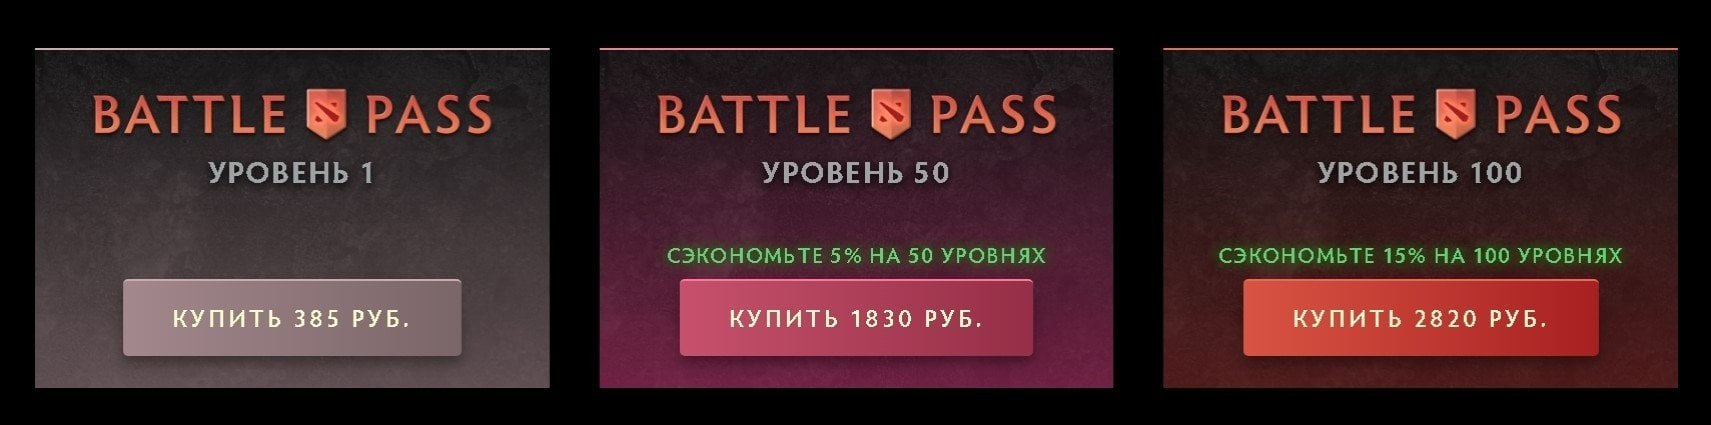 В Dota 2 вышел Battle Pass 2022 как получить аркану на Void и другие награды